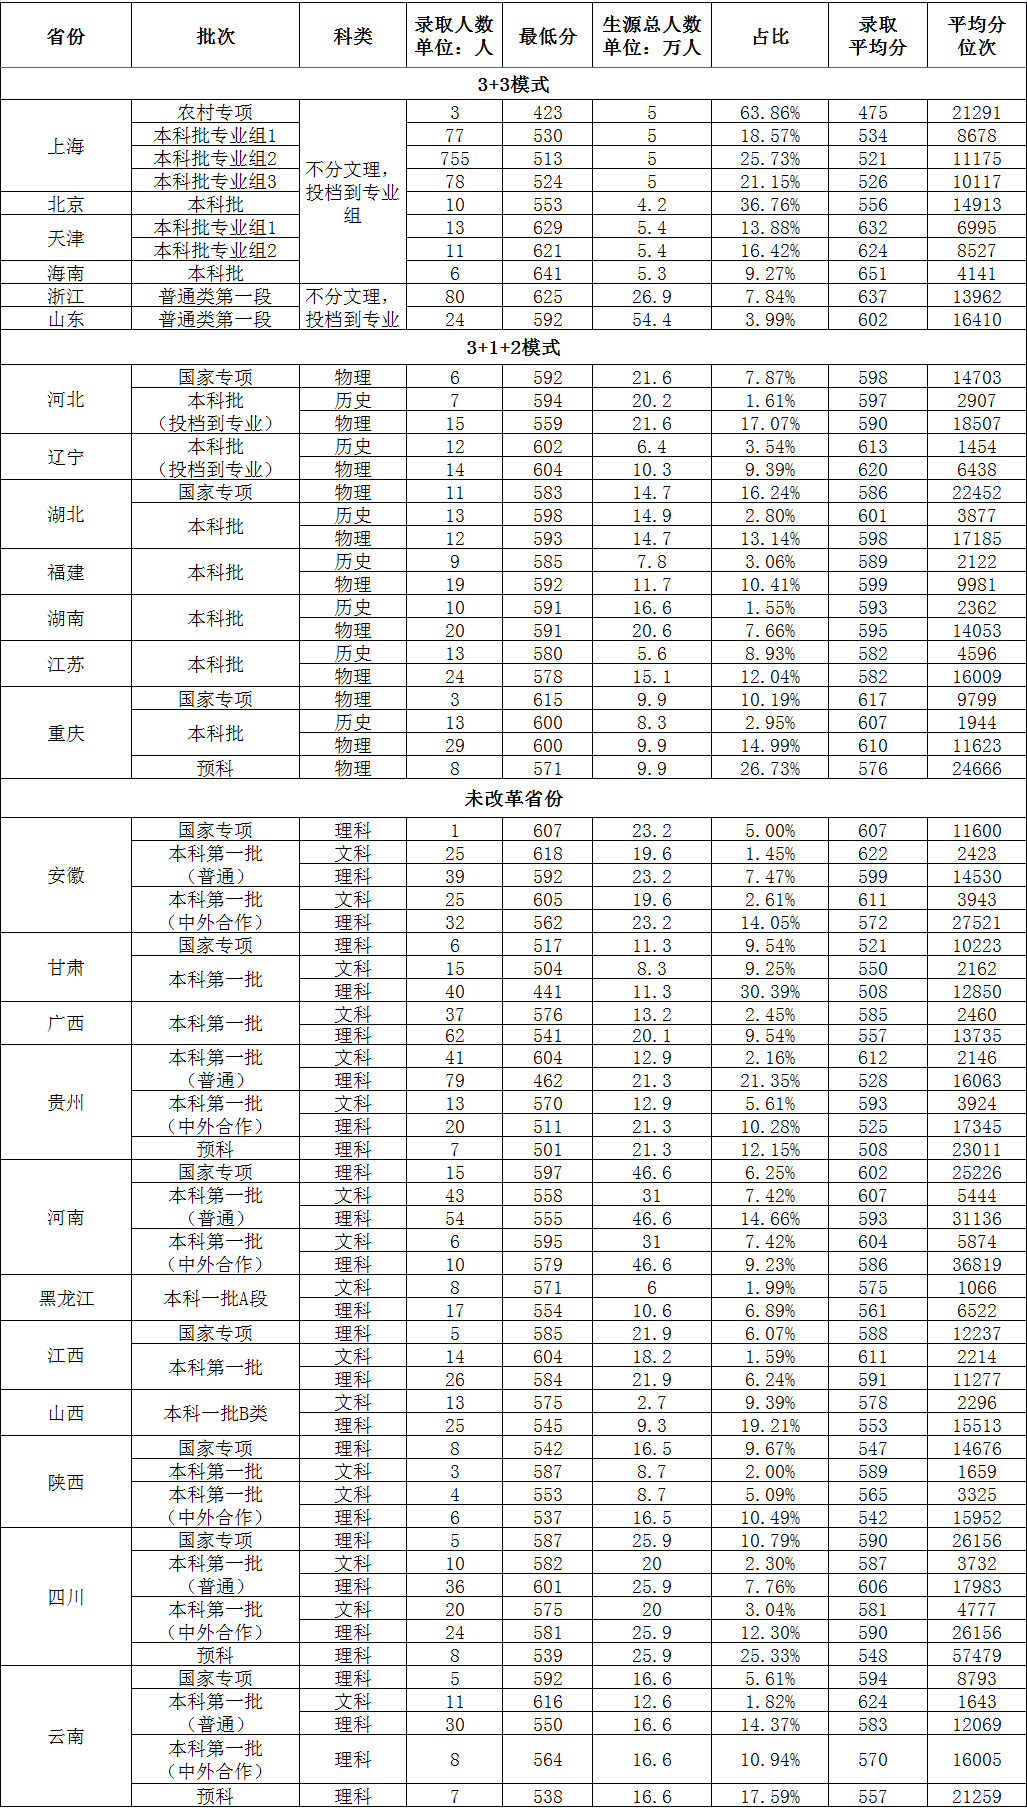 上海对外经贸大学－2021年生源地录取最低分占比及平均分位次(来自各省级考试机构公布数据)